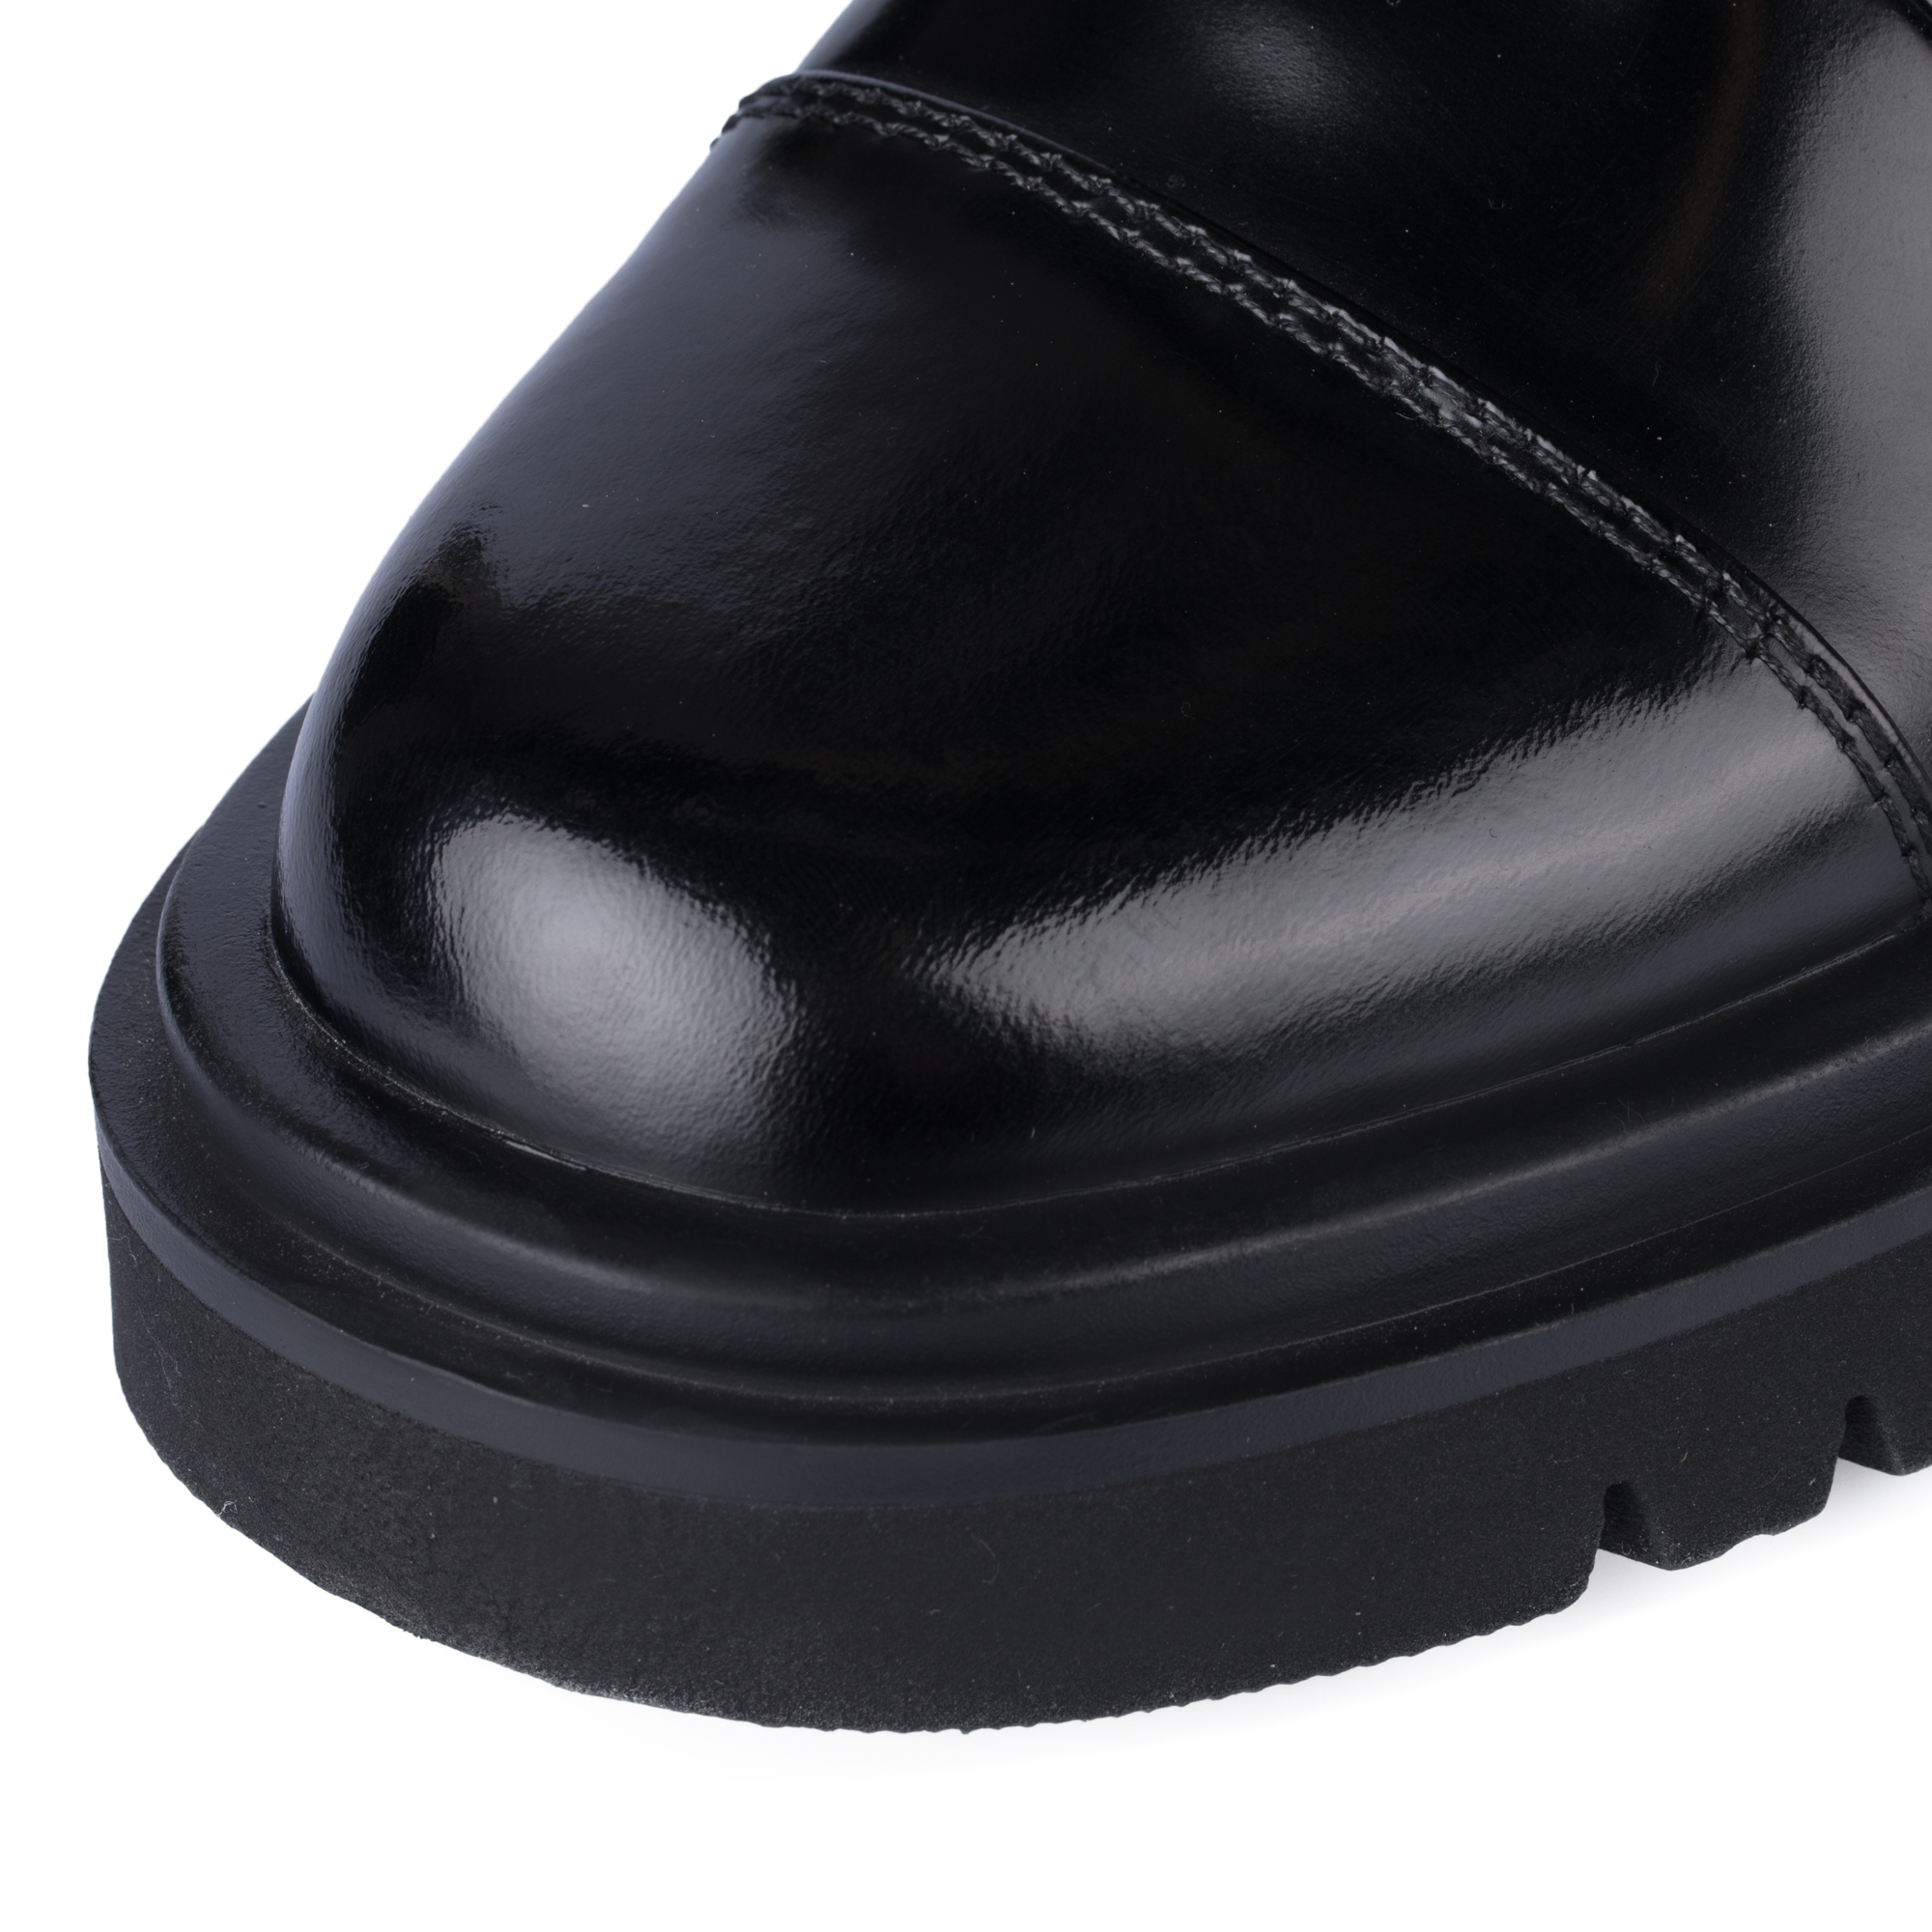 Ботинки Thomas Munz 233-895A-2602, цвет черный, размер 40 - фото 6